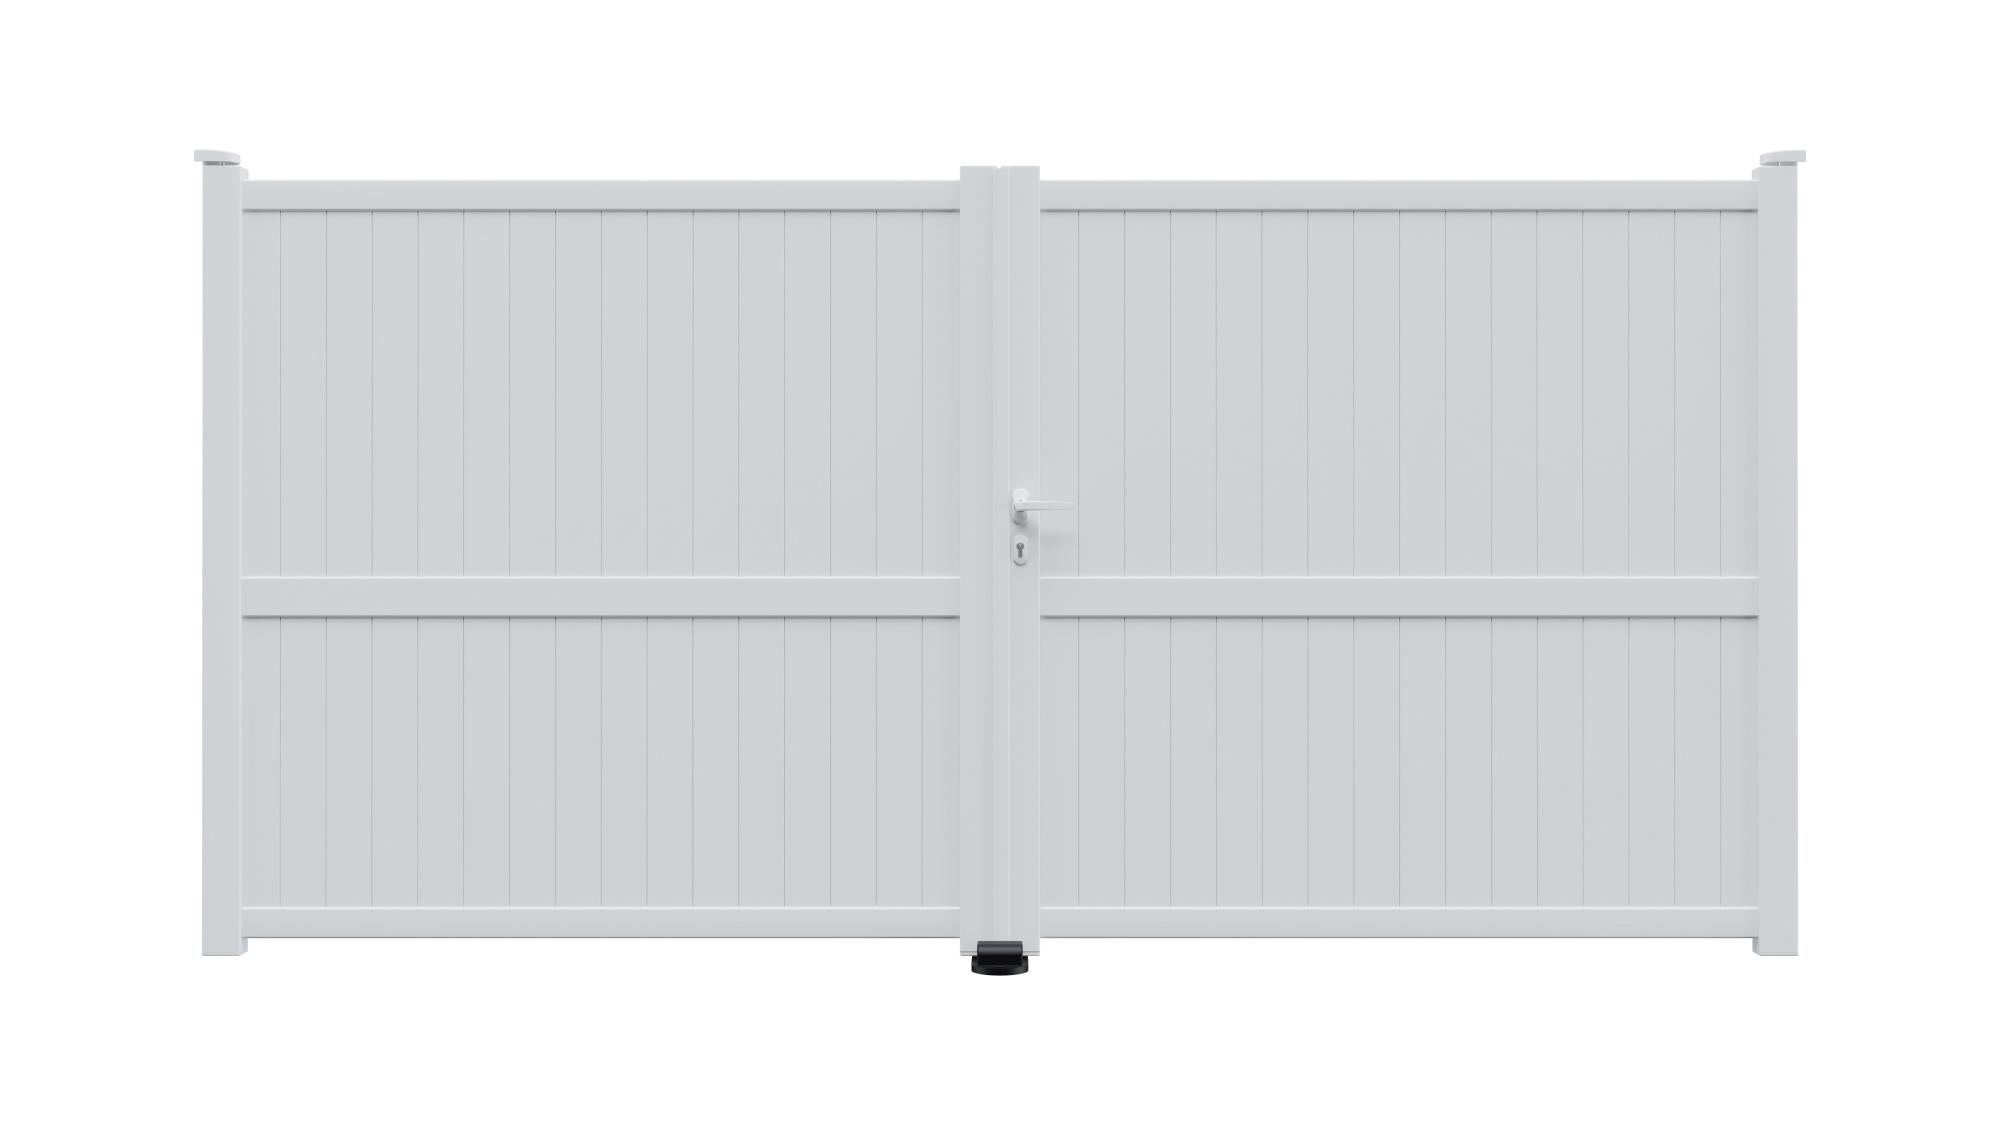 Puerta batiente de aluminio blanco mod:cl03 350x180 cm